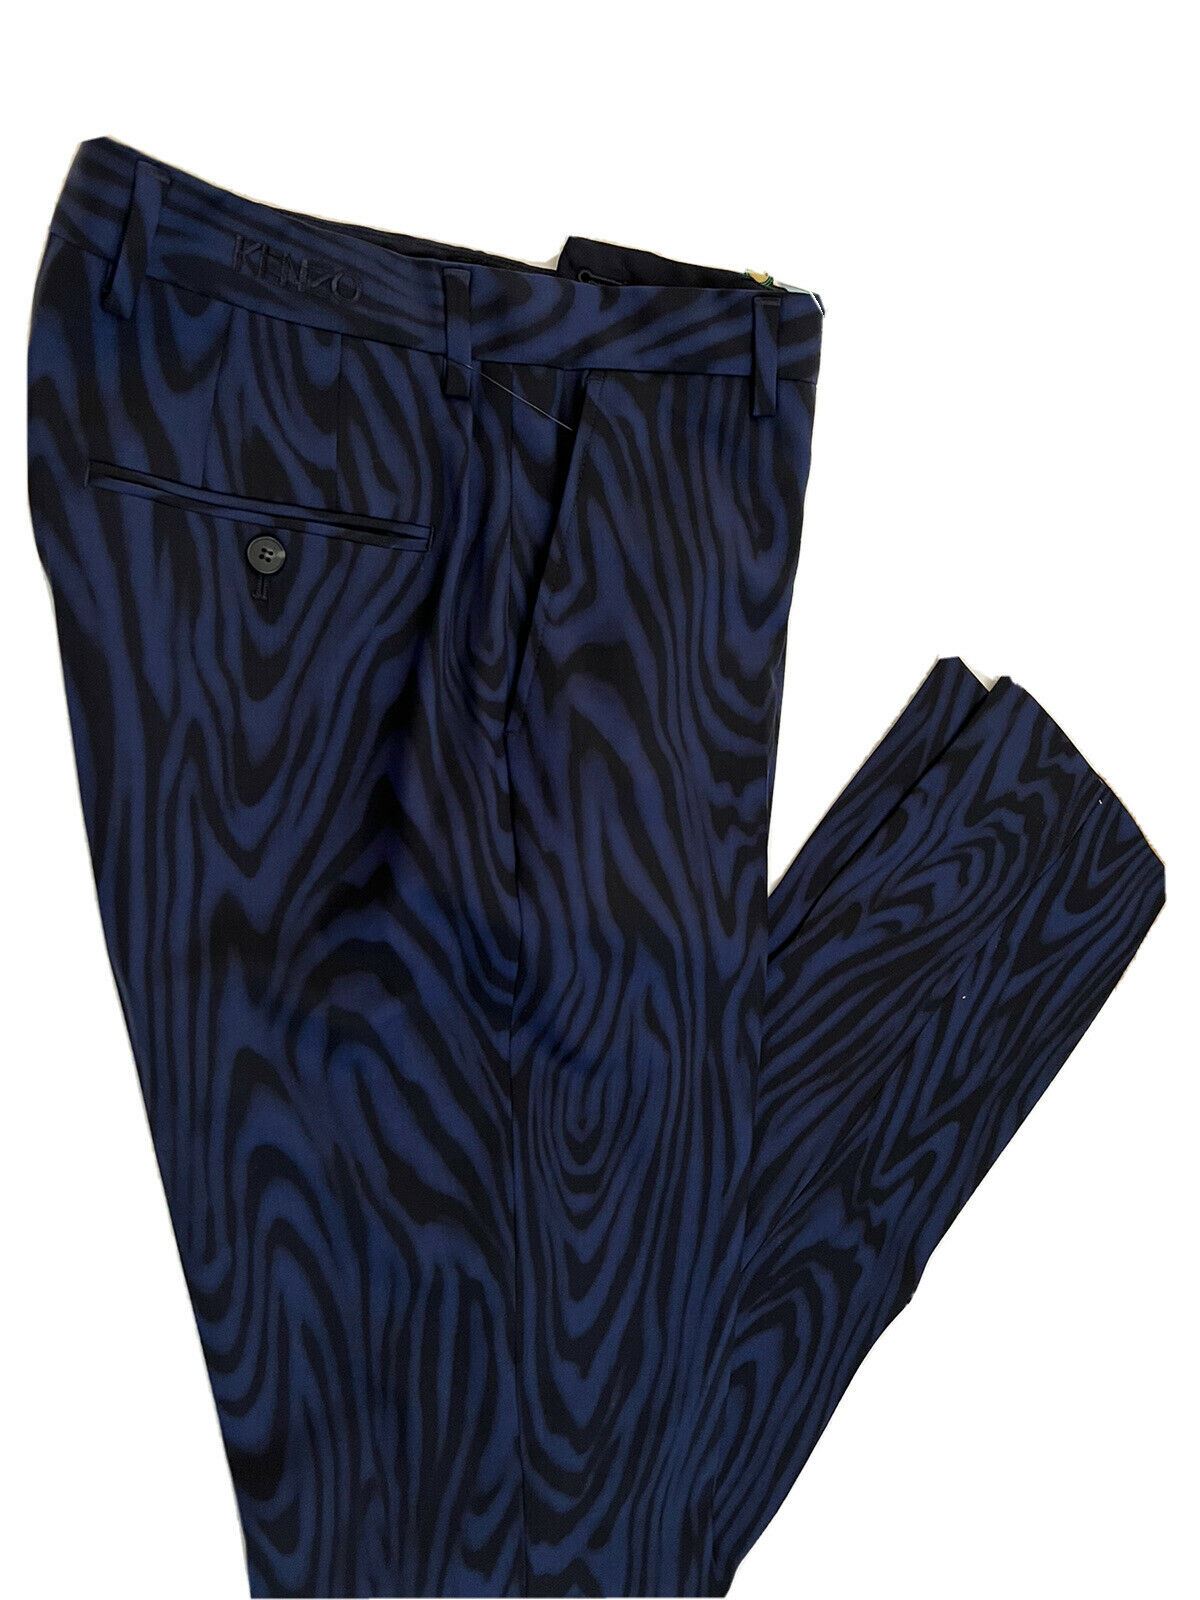 Neu mit Etikett: 625 $ Kenzo Herren-Hose aus marineblauer Wolle, formelle, schmal zulaufende Hose, 30 US (46 Euro)